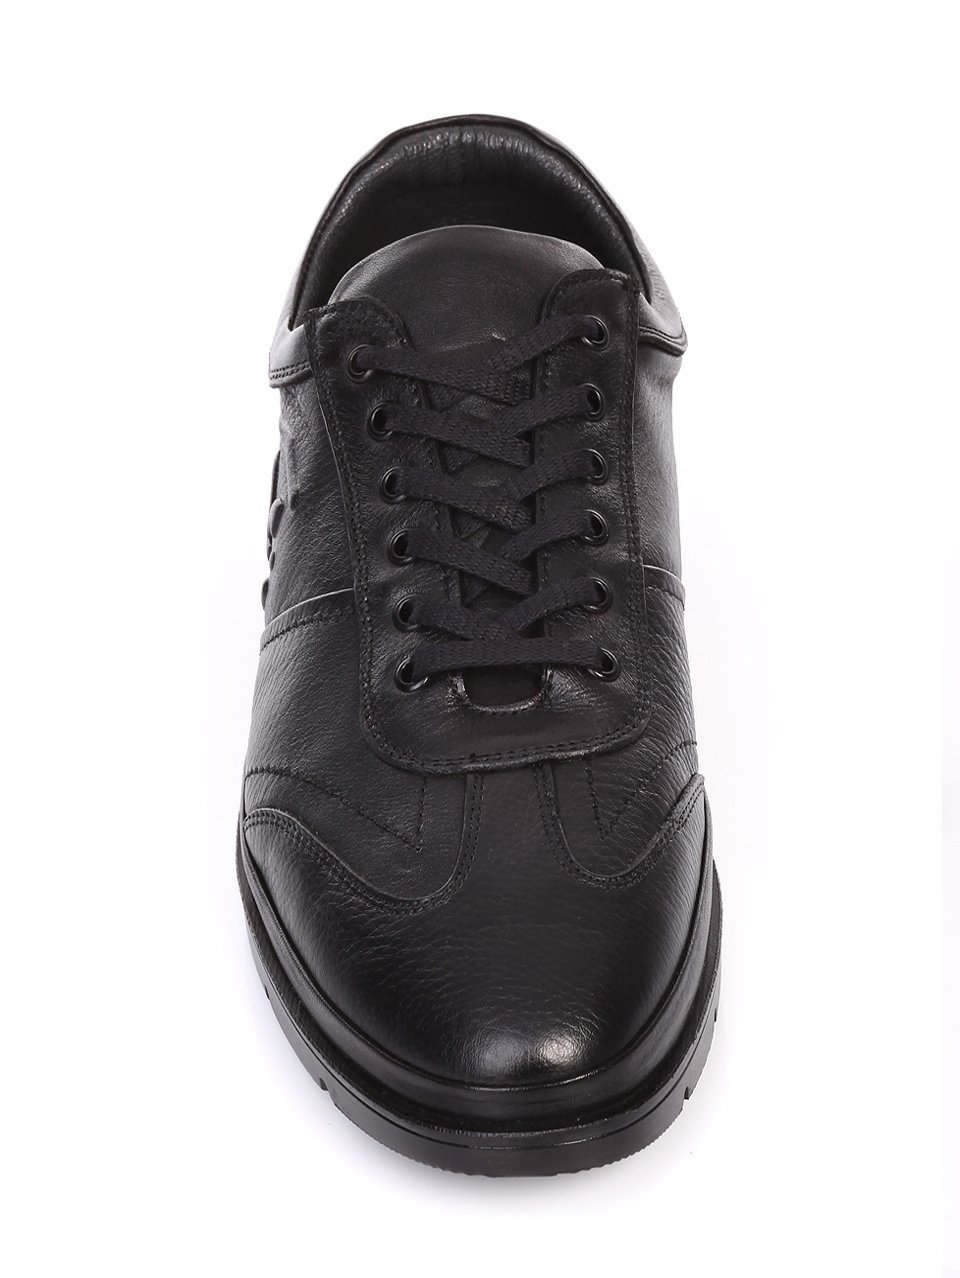 Мъжки обувки от естествена кож в черно 7AT-16879 black